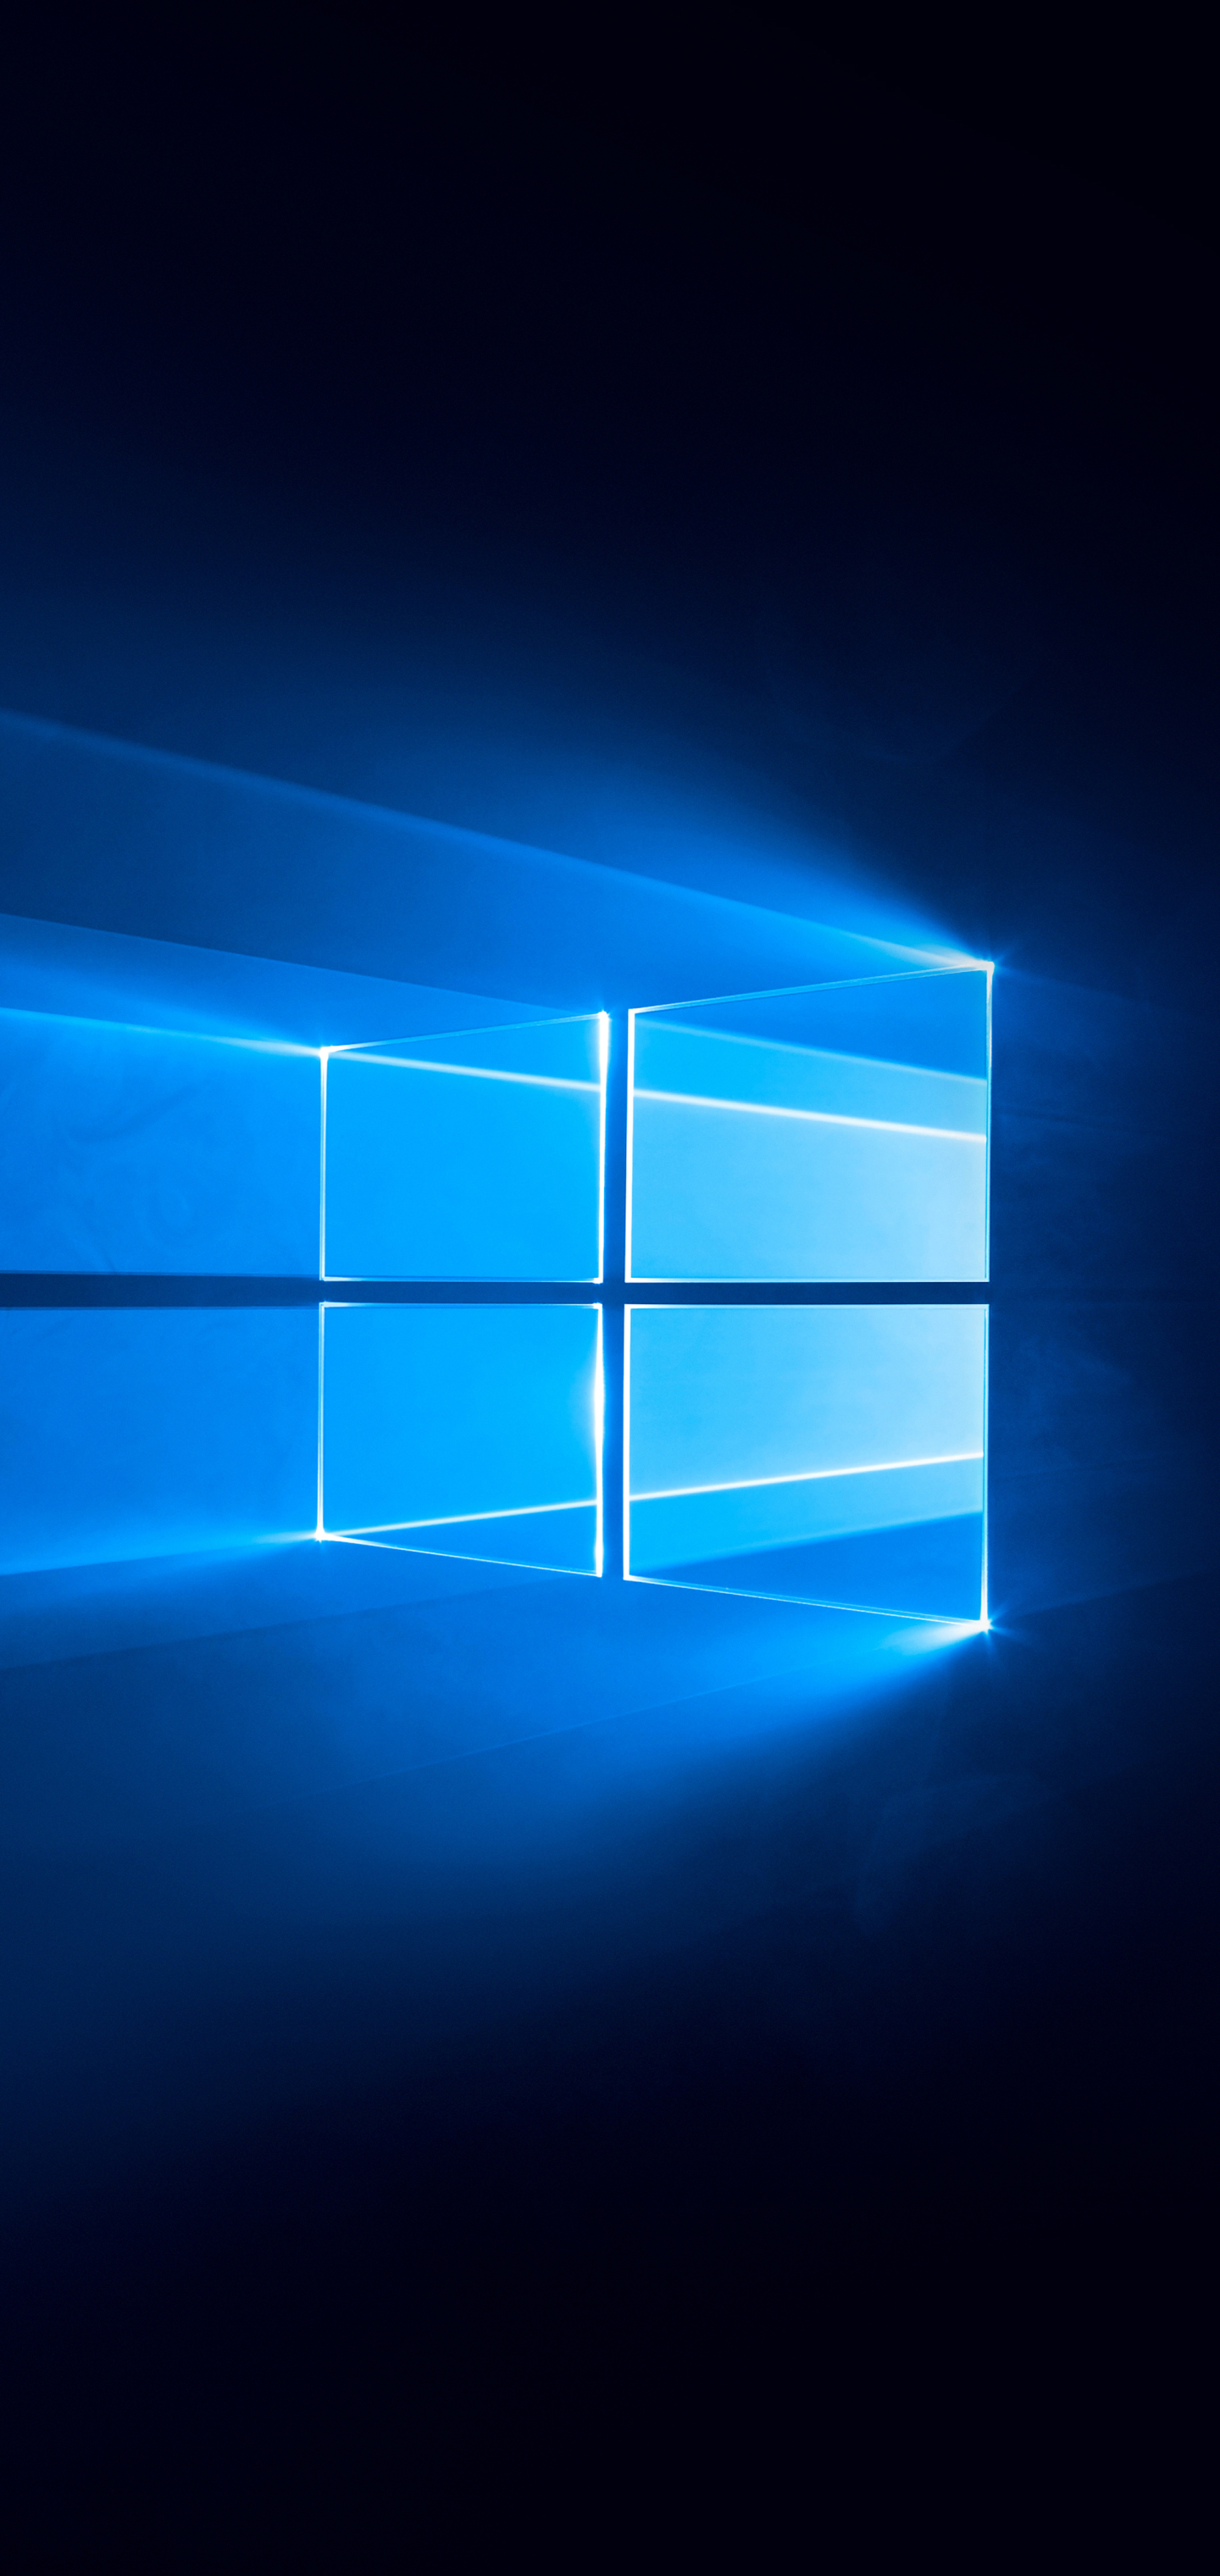 Скачать обои бесплатно Технологии, Windows 10, Окна картинка на рабочий стол ПК